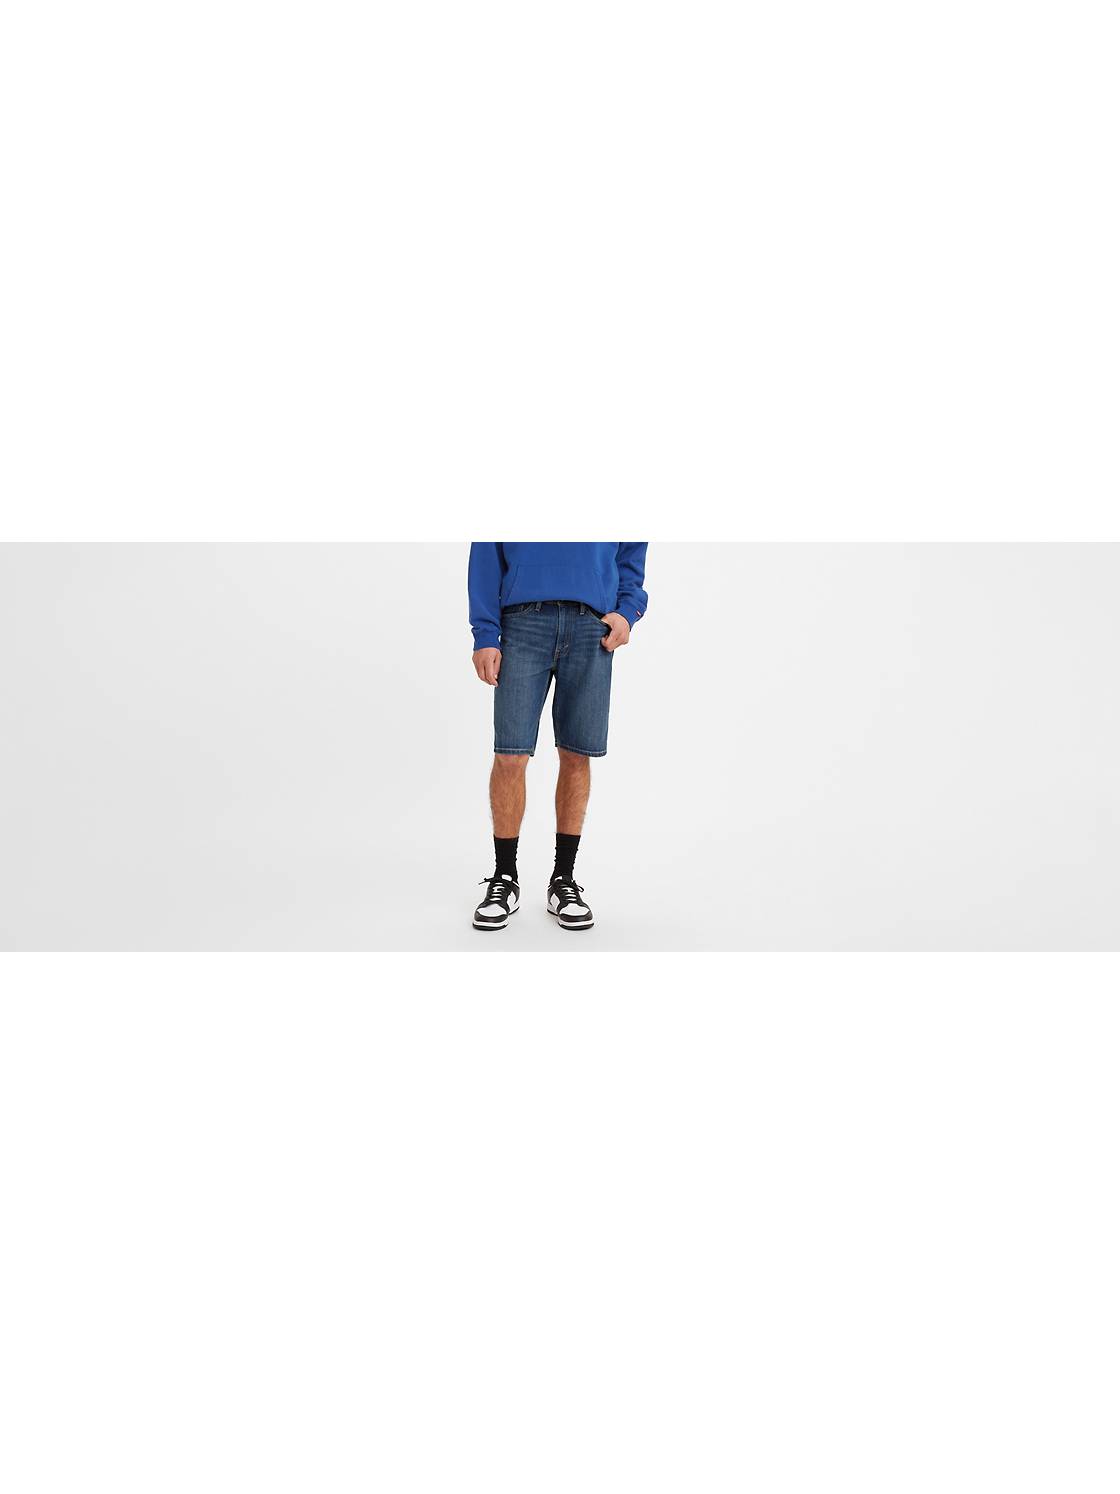 541™ Athletic Taper 11 in. Men's Shorts 1